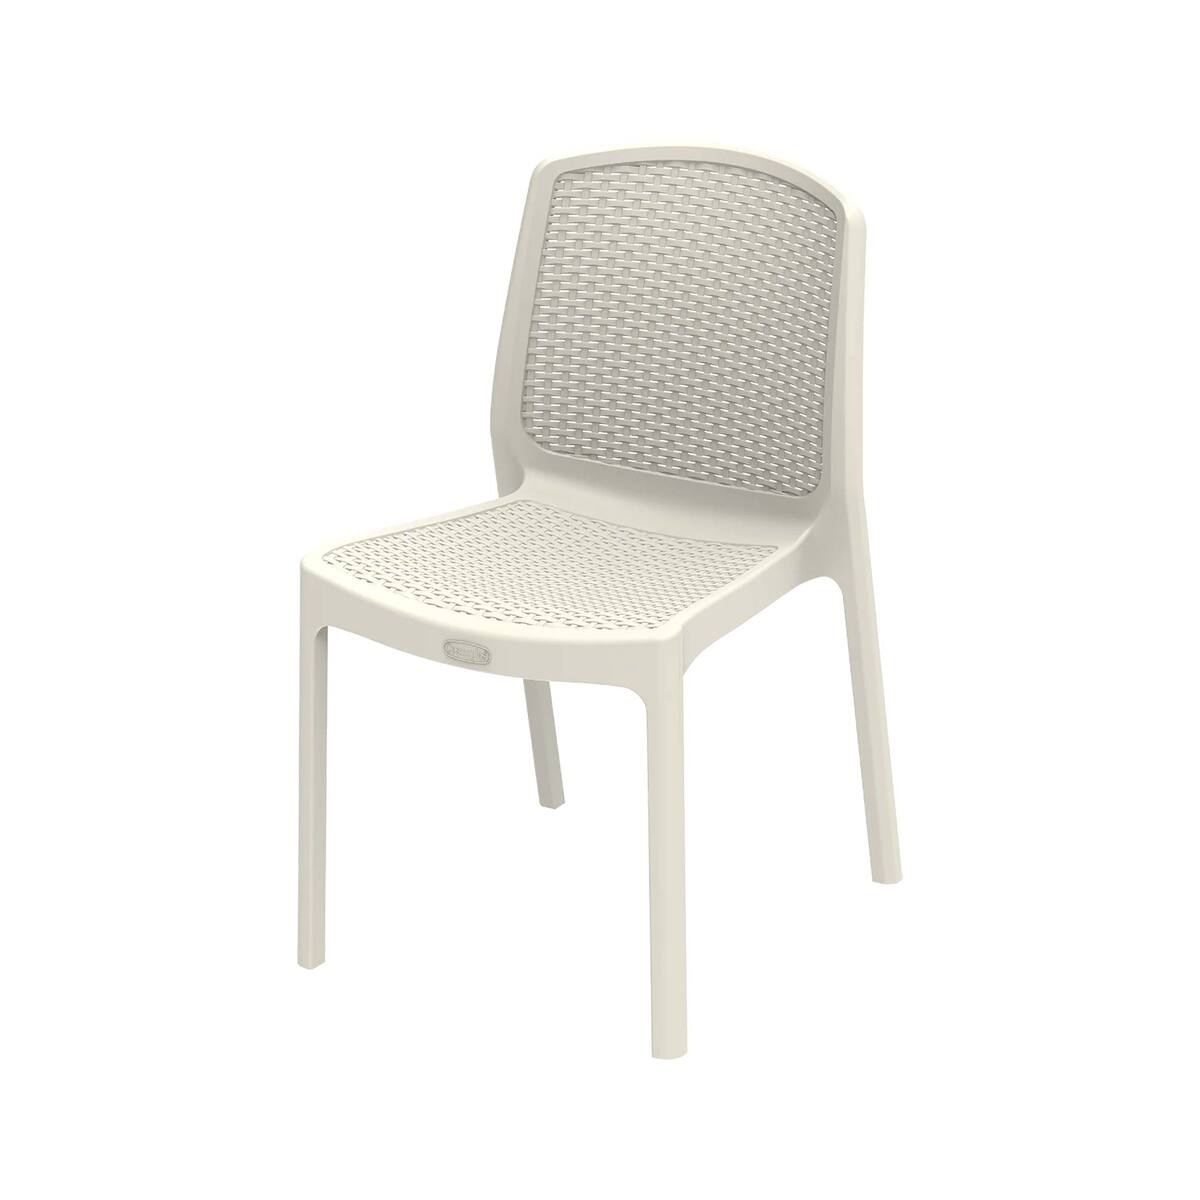 Cosmoplast Cedarattan Armless chair IFOFXX006WG Warm Grey